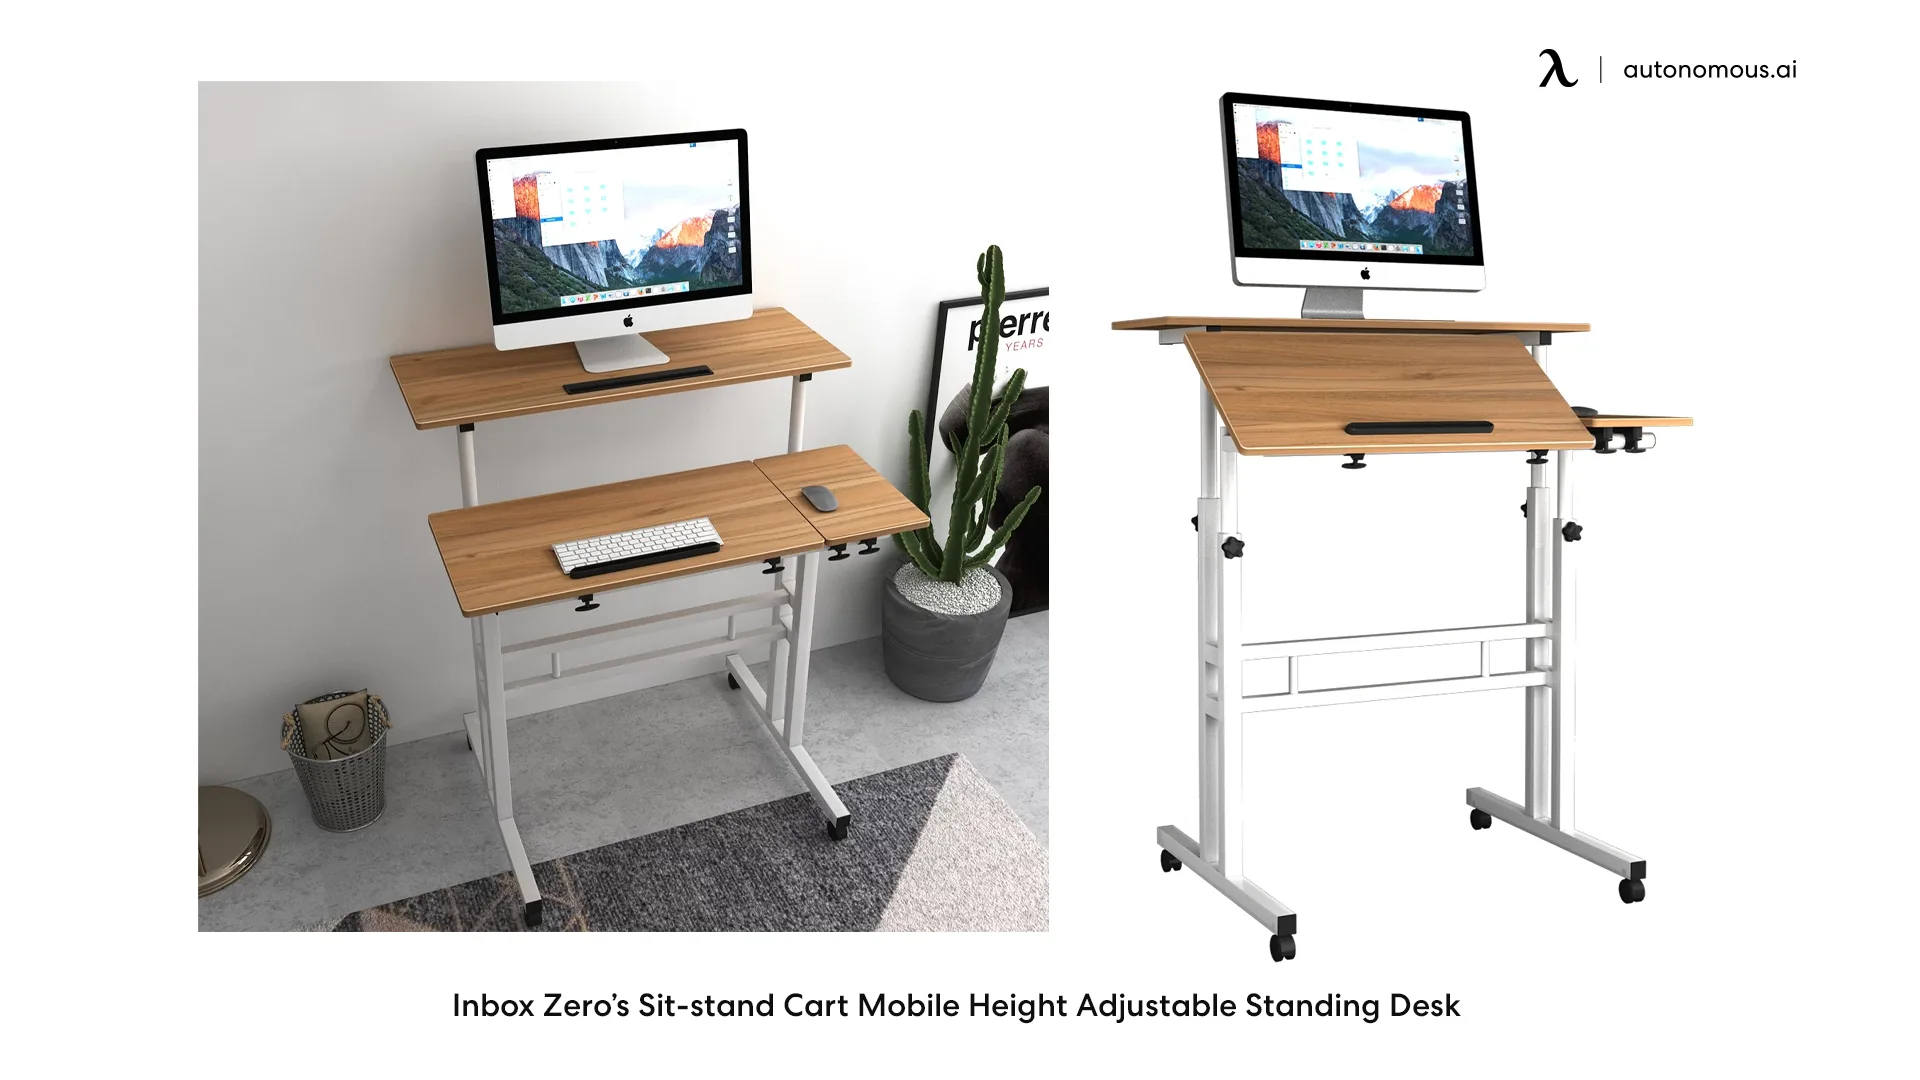 Inbox Zero’s Sit-stand Cart Mobile Height Adjustable Standing Desk